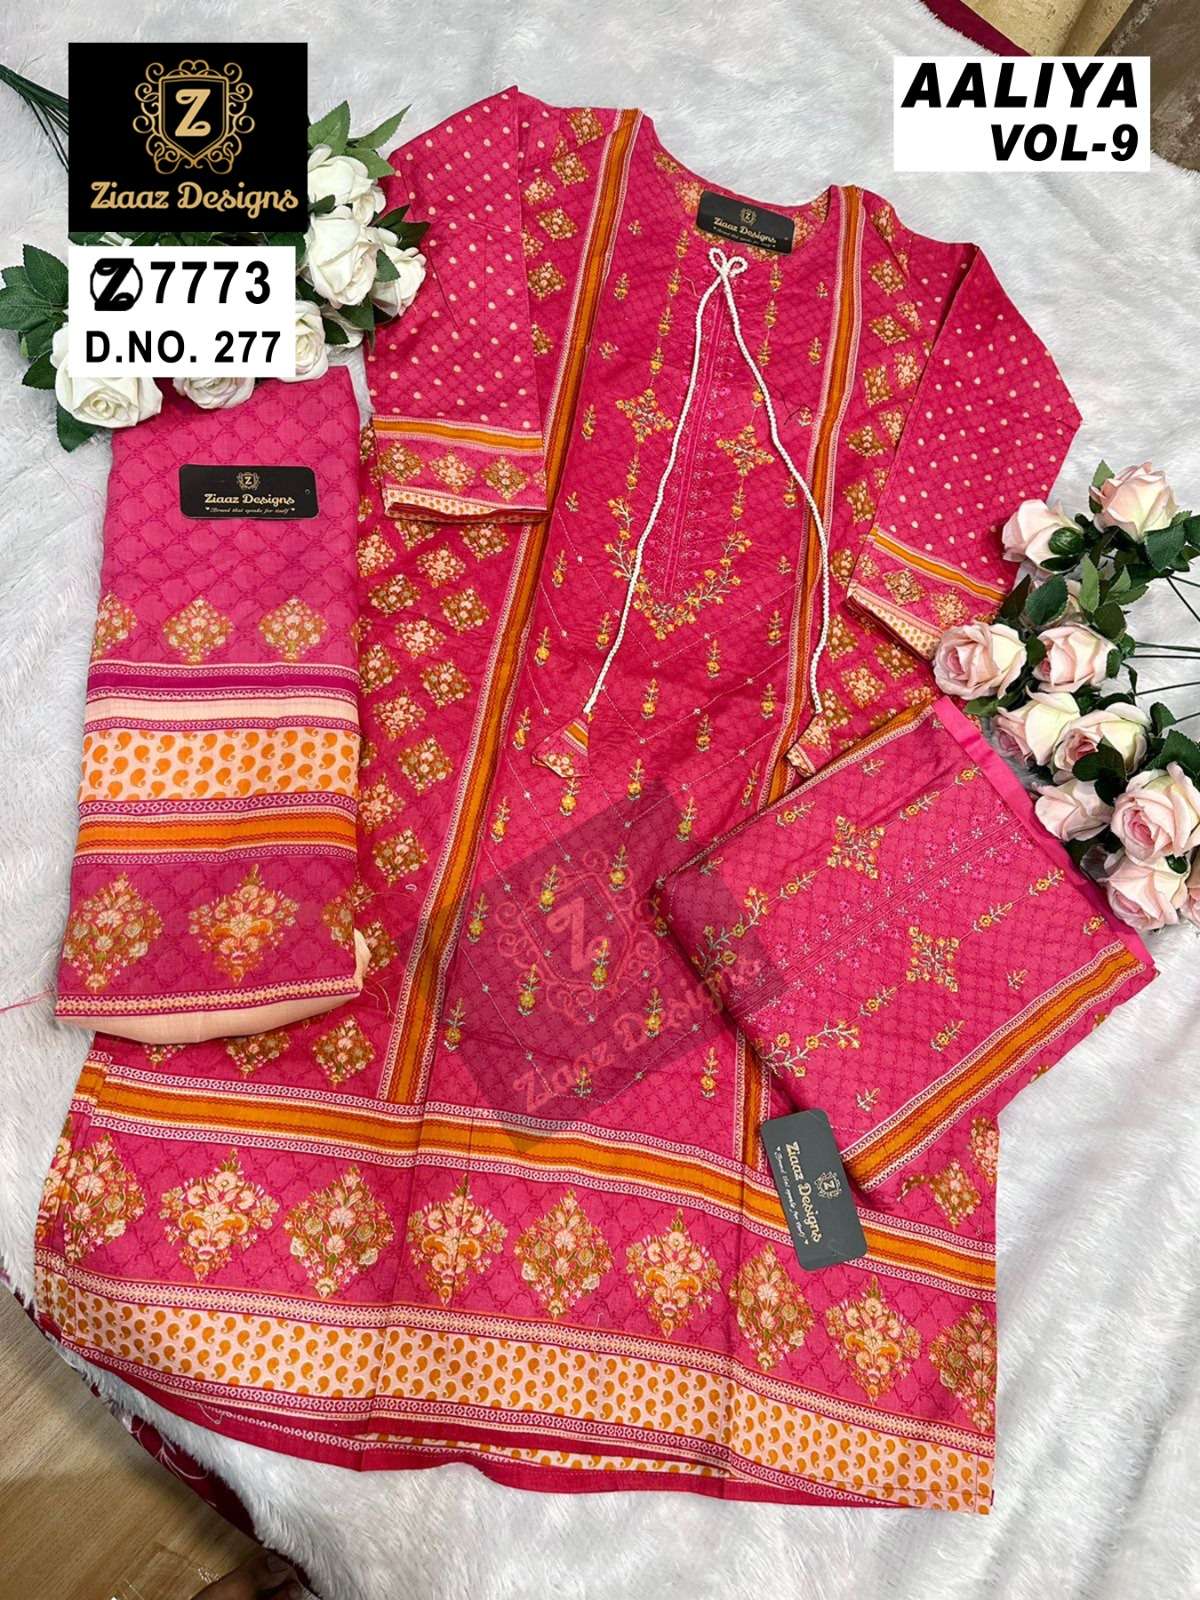 ziaaz designs aaliya vol 9 series 272-277 cotton lawn suit 